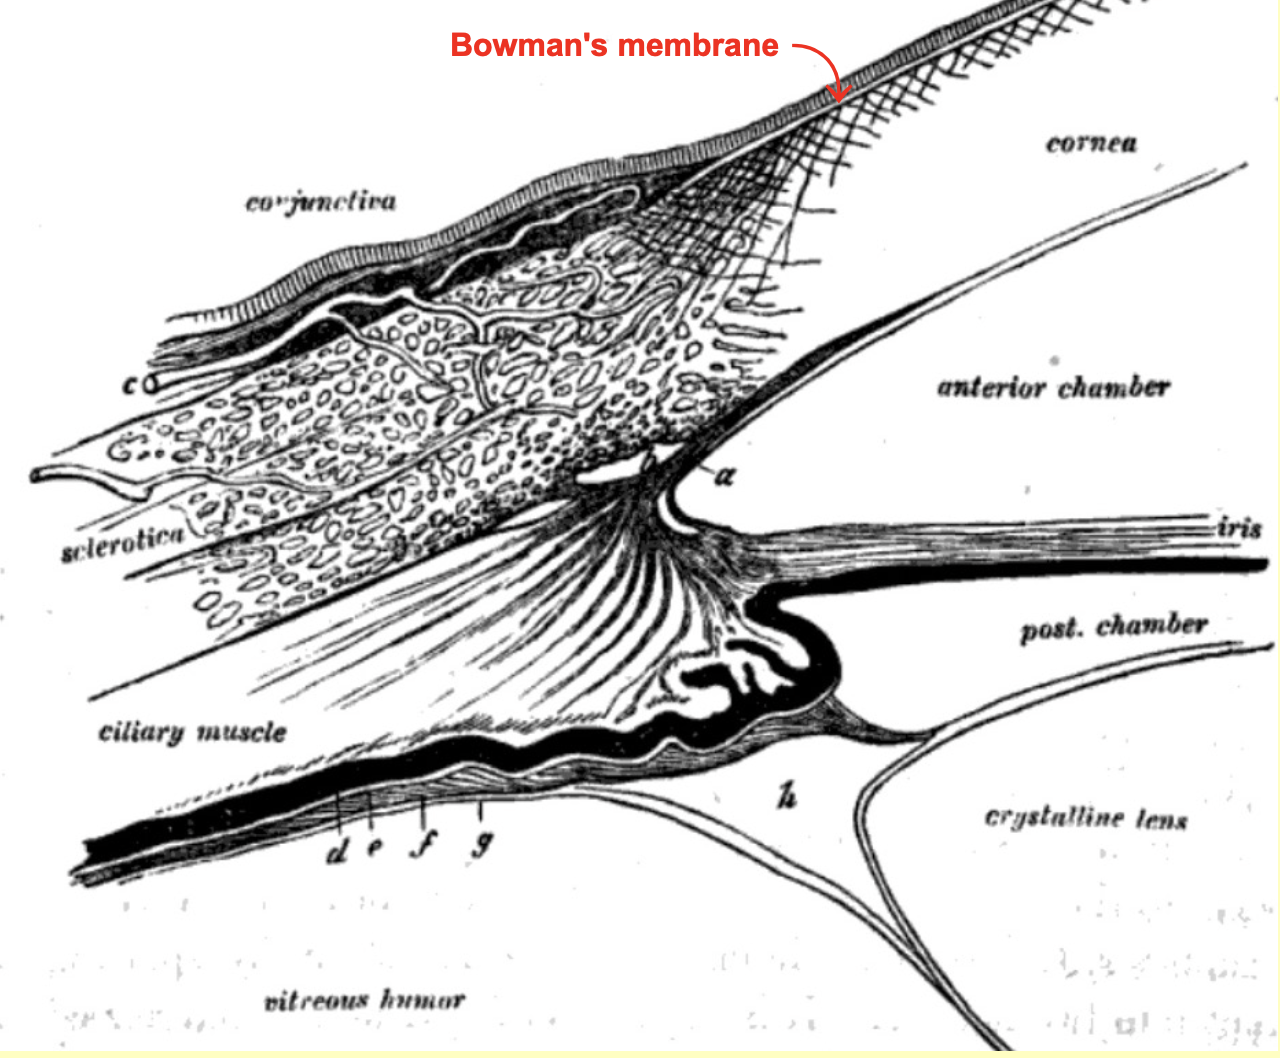 Histology at SIU, Bowman's eye